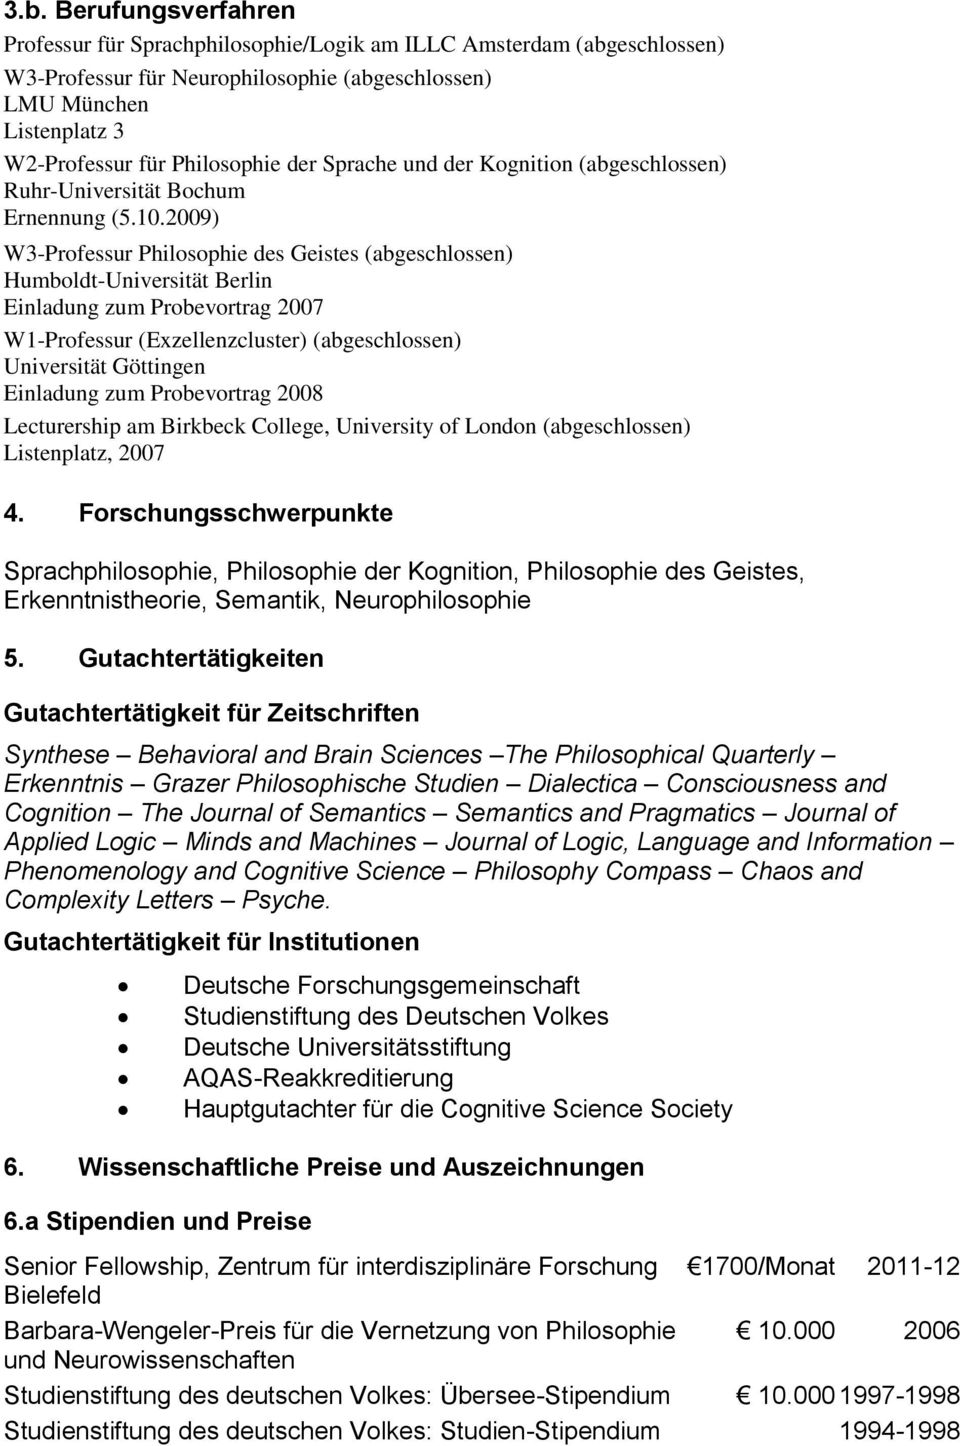 2009) W3-Professur Philosophie des Geistes (abgeschlossen) Humboldt-Universität Berlin Einladung zum Probevortrag 2007 W1-Professur (Exzellenzcluster) (abgeschlossen) Universität Göttingen Einladung